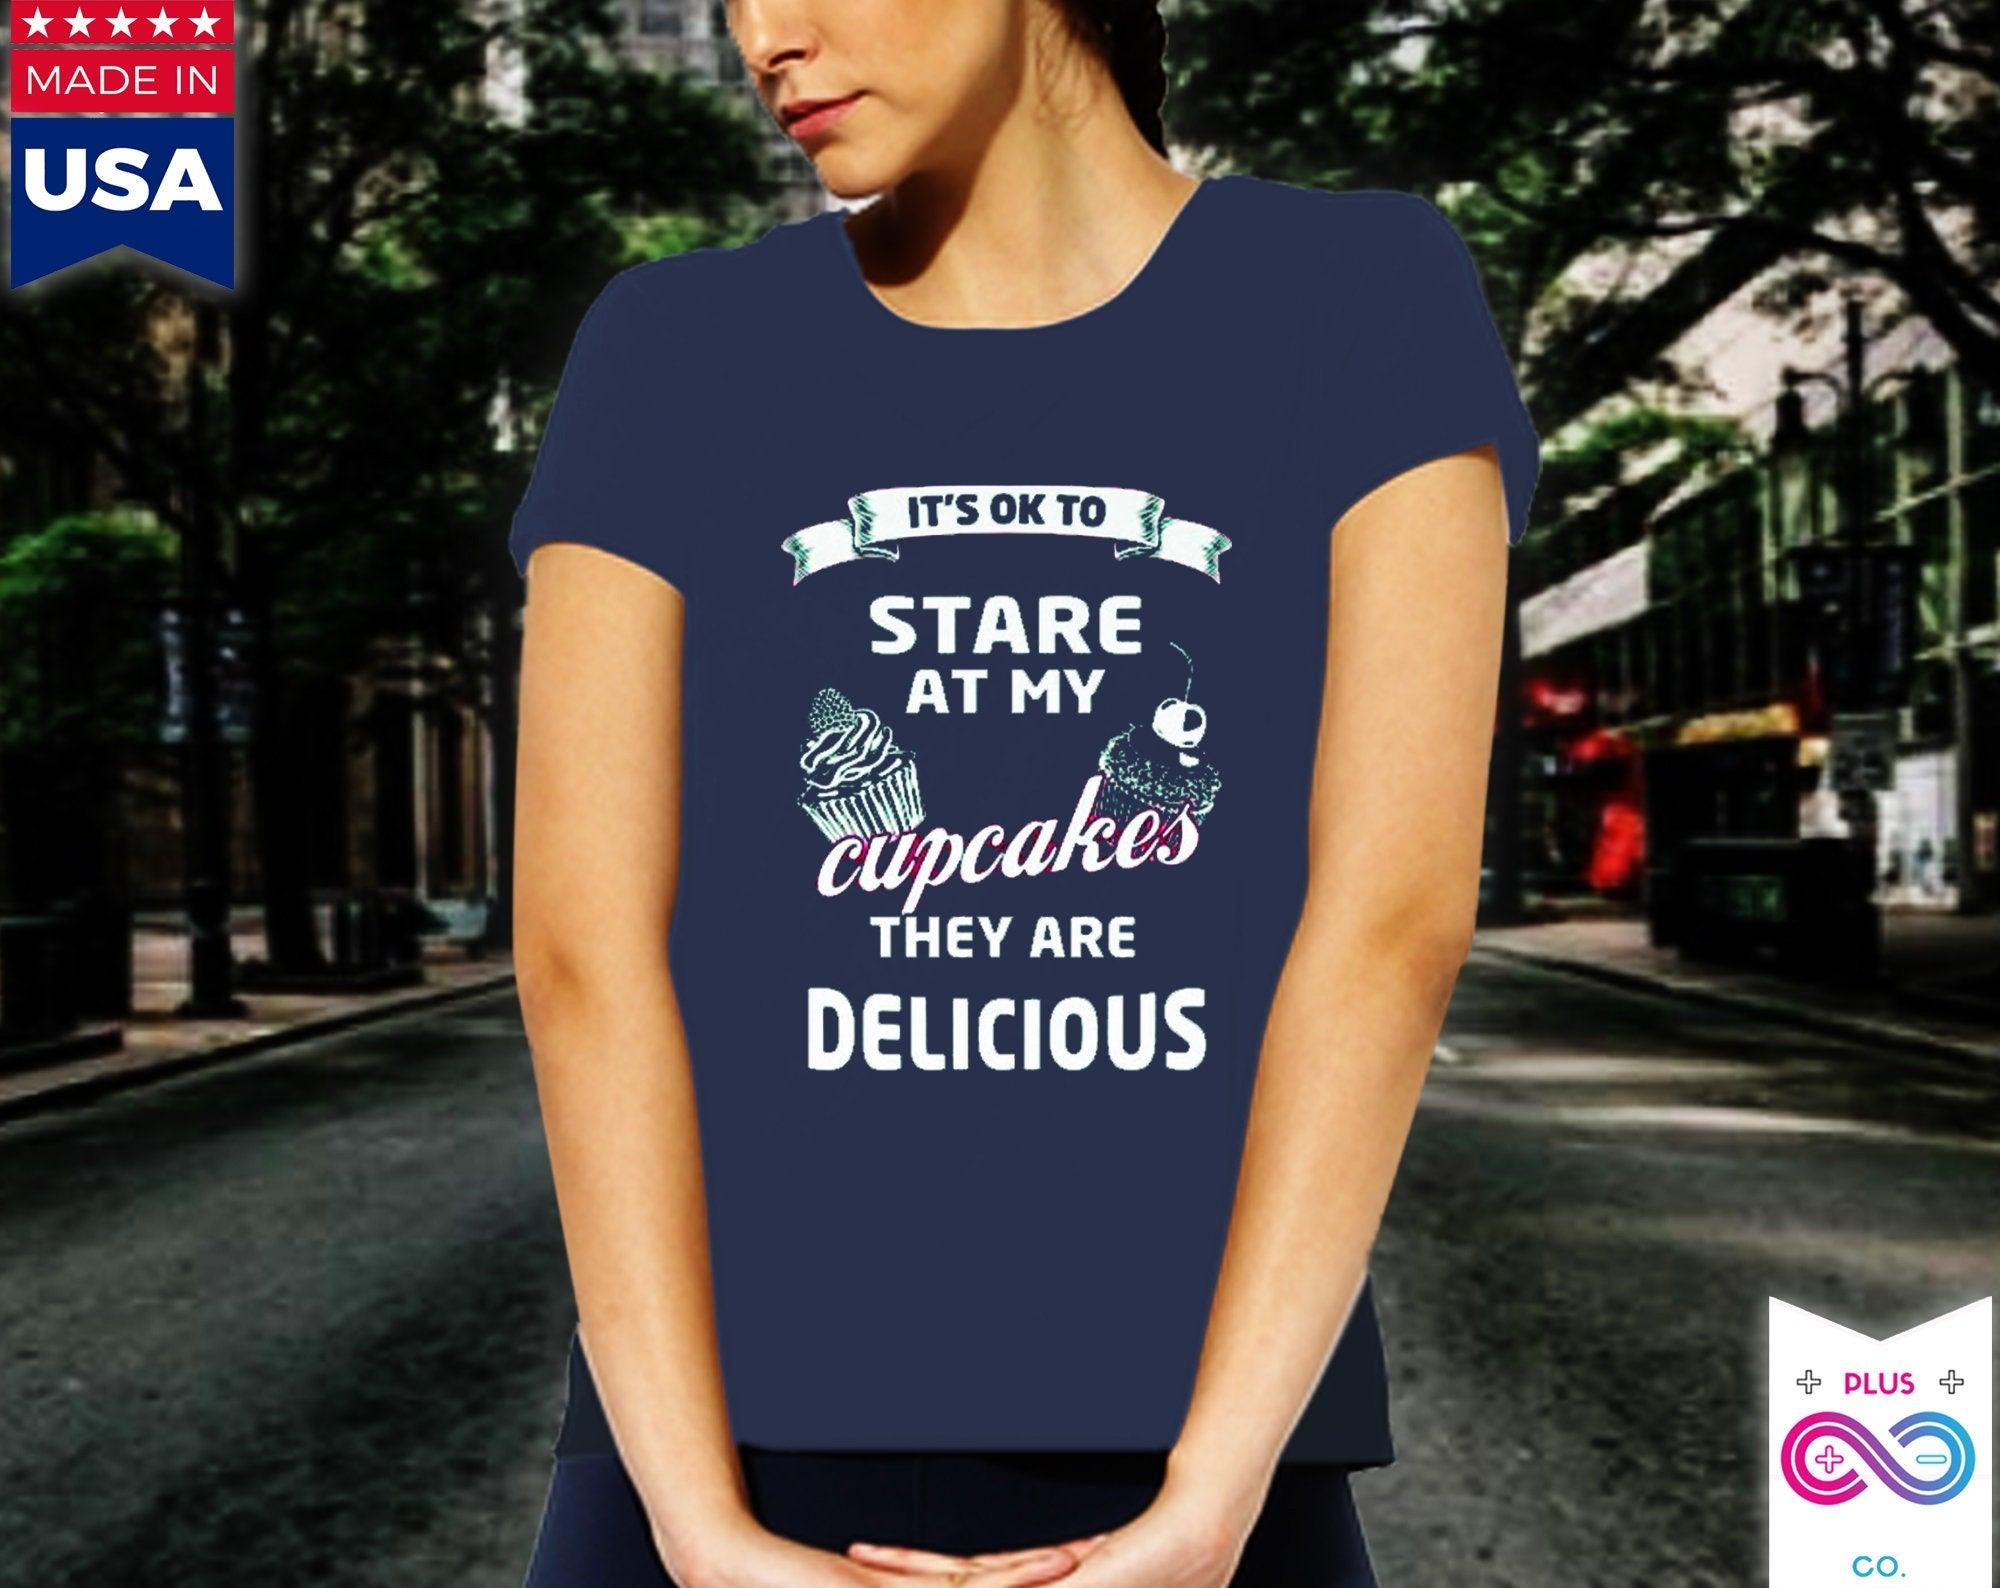 私のカップケーキを見つめても大丈夫です。おいしいです。女性のお気に入りの T シャツ、ユーモアのあるシャツ、ベストセラーのシャツ、彼女への素晴らしい面白いギフト - plusminusco.com